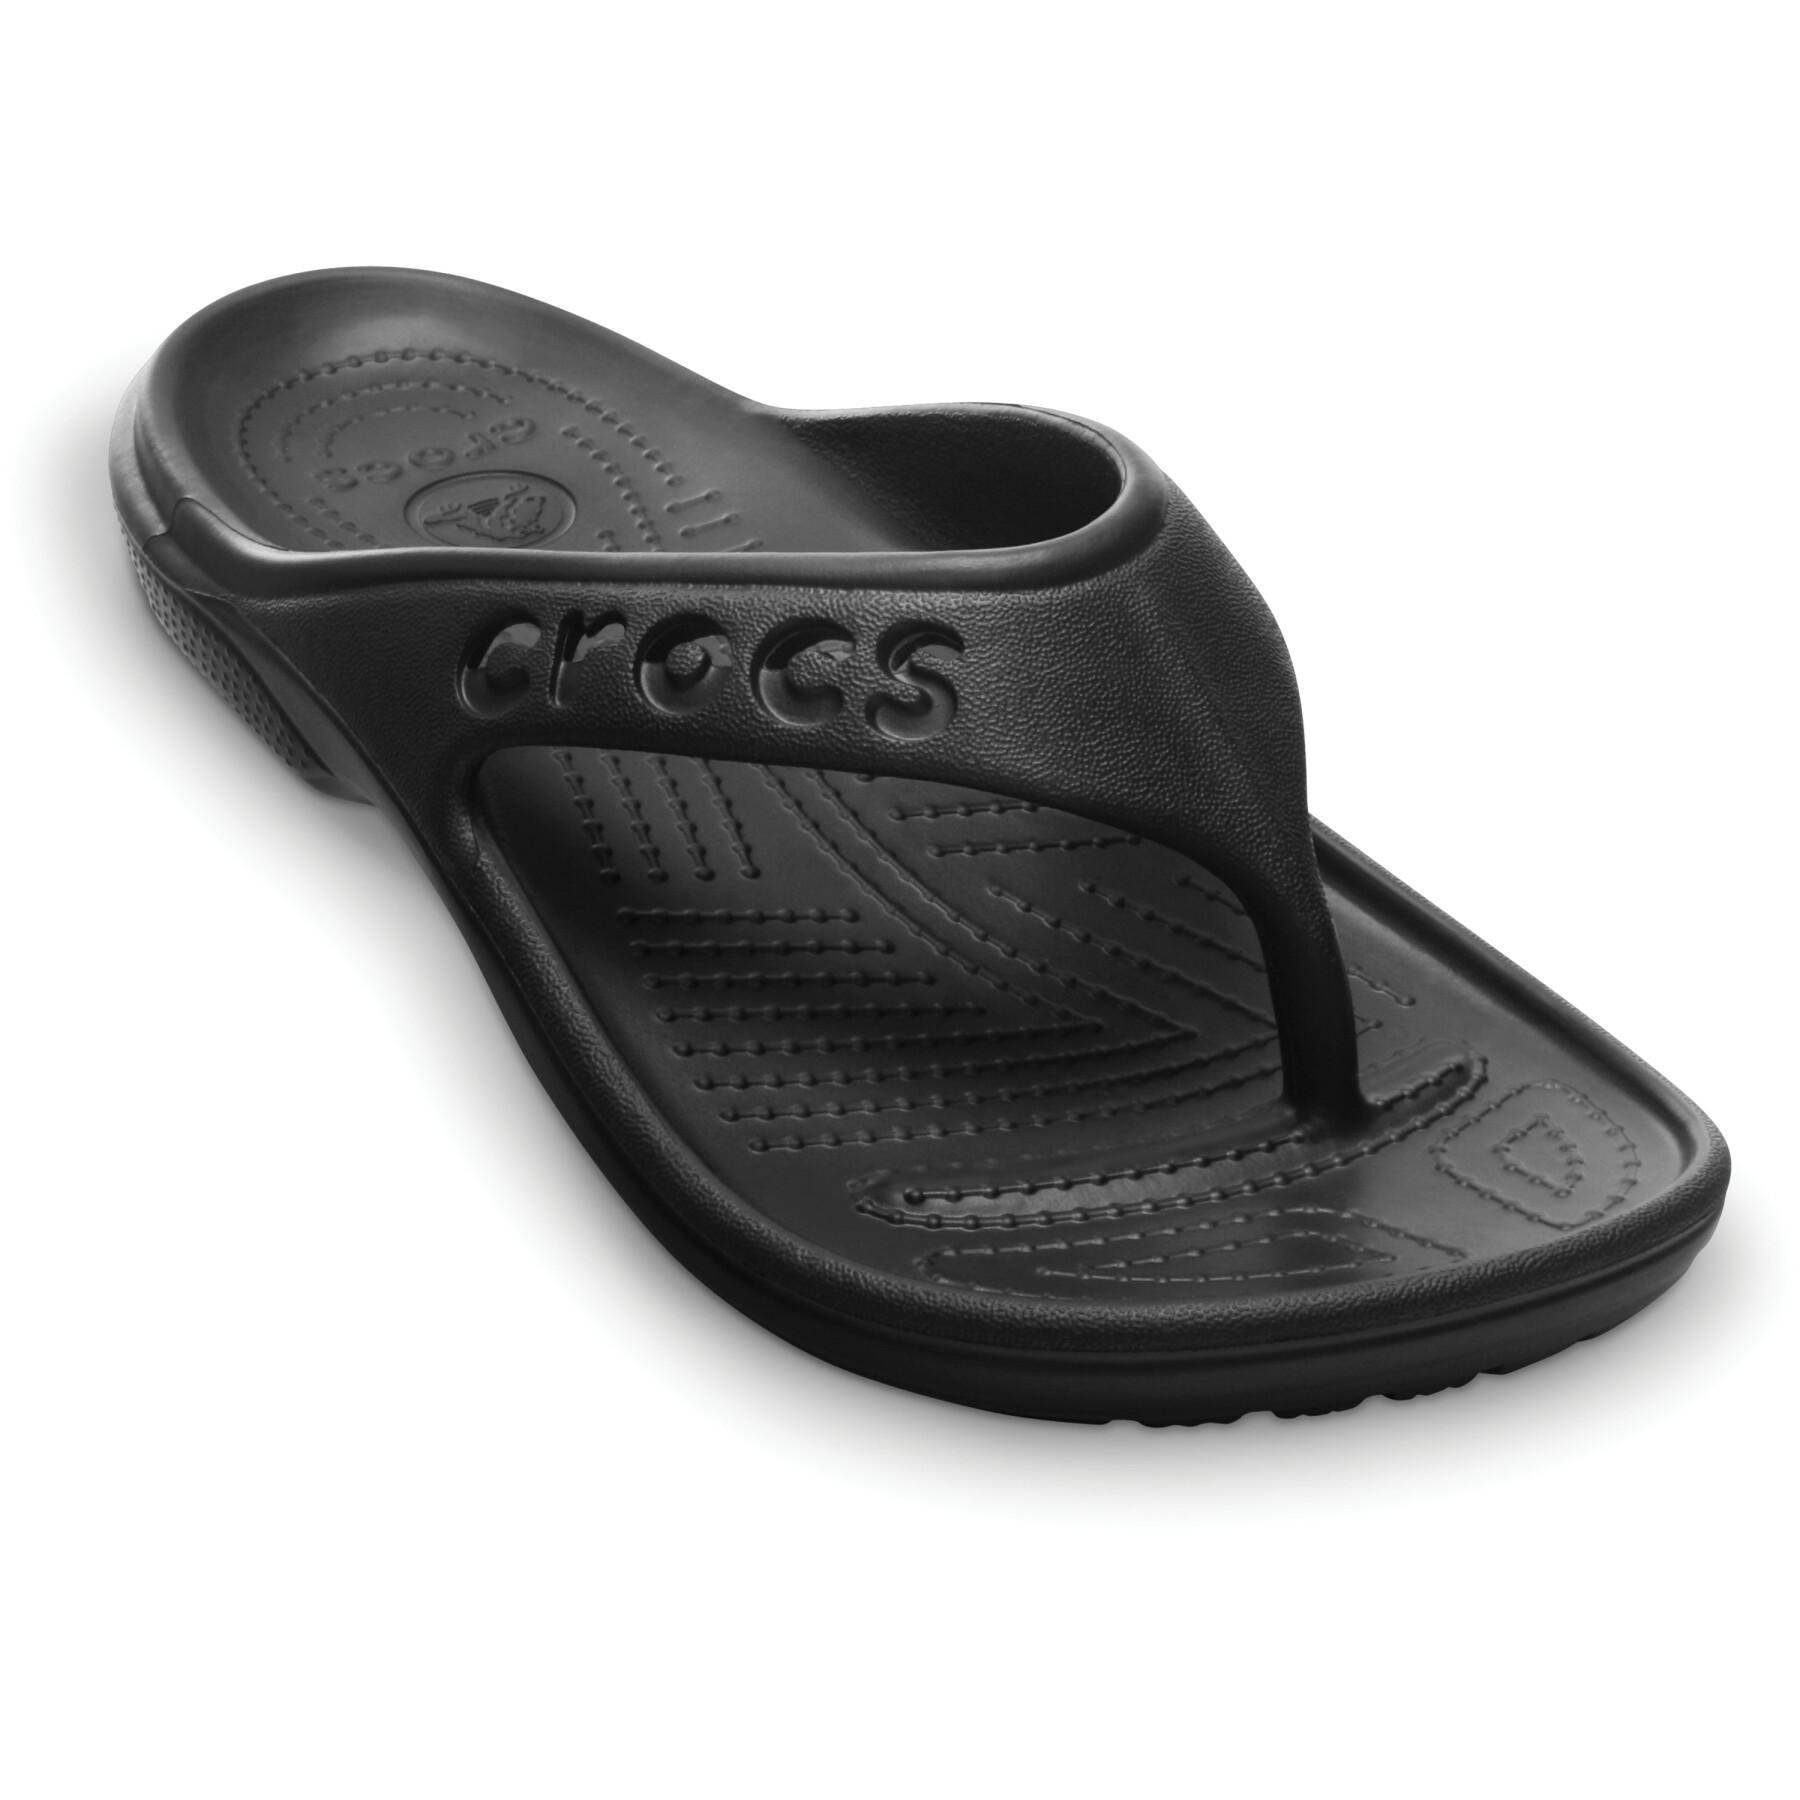 Flip-flops Crocs baya flip